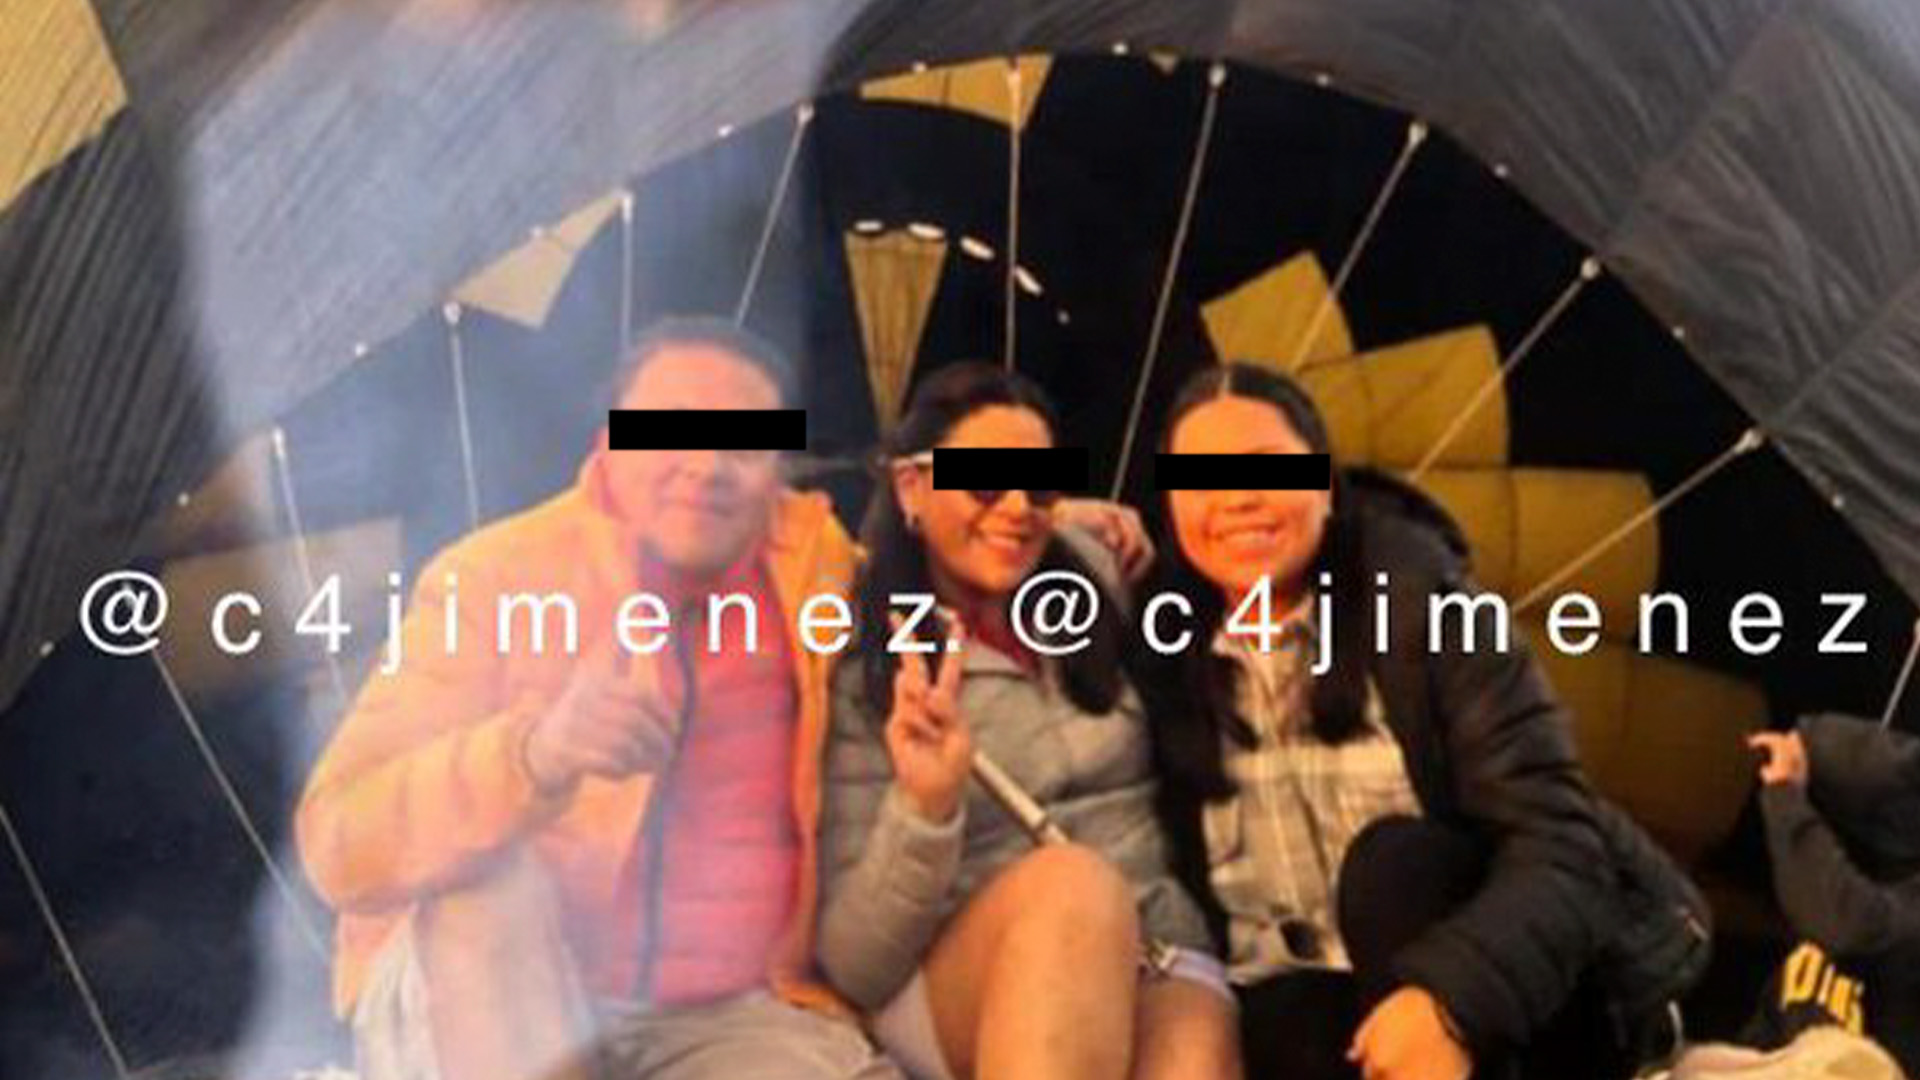 En redes sociales circuló la fotografía que se tomó la familia antes de sufrir el accidente (Foto: Twitter/@c4jimenez)